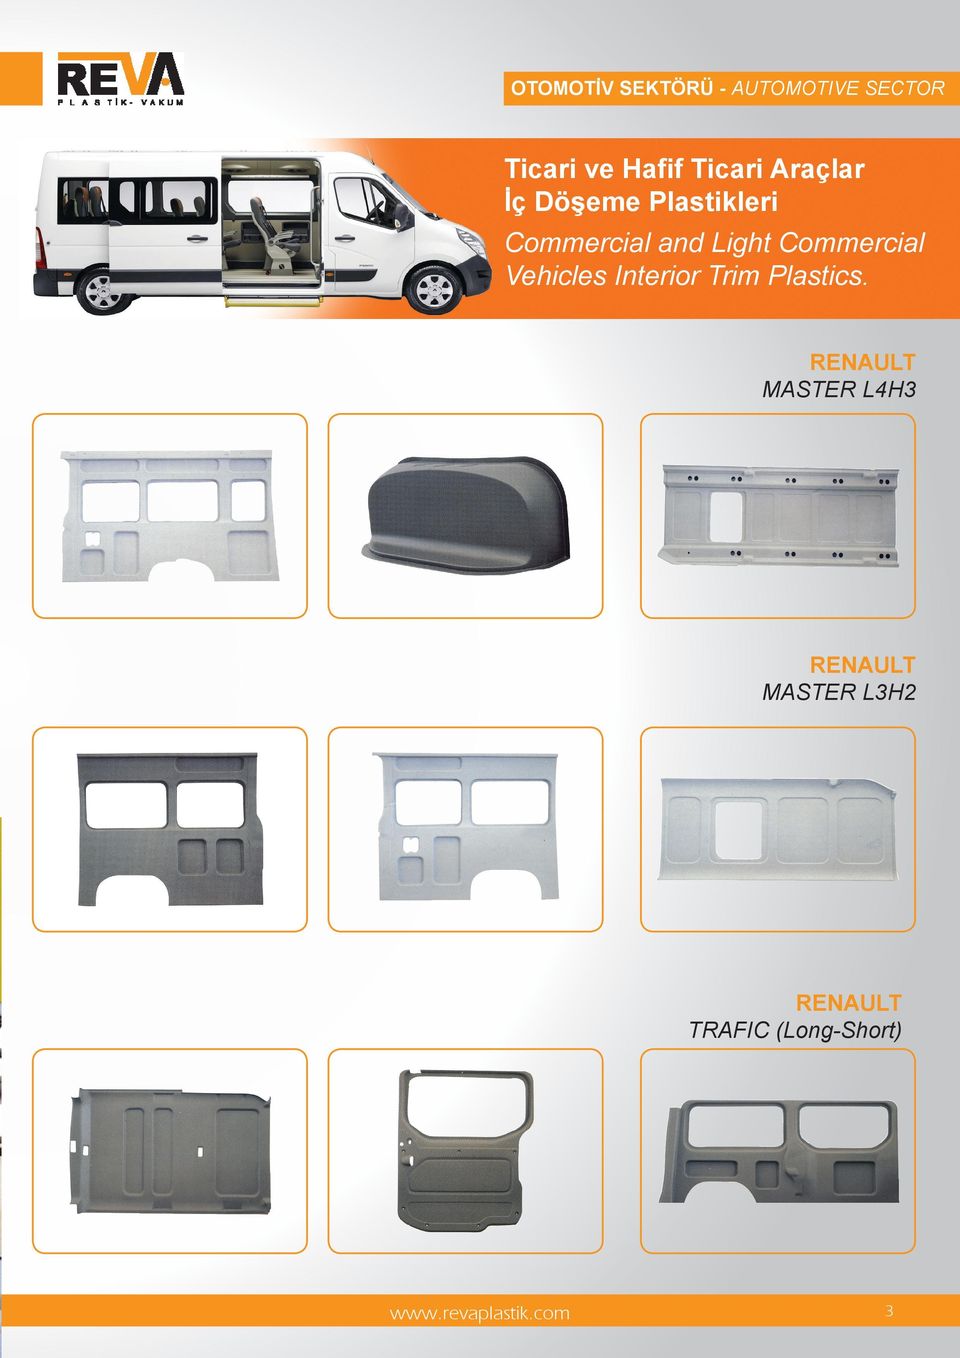 Light Commercial Vehicles Interior Trim Plastics.